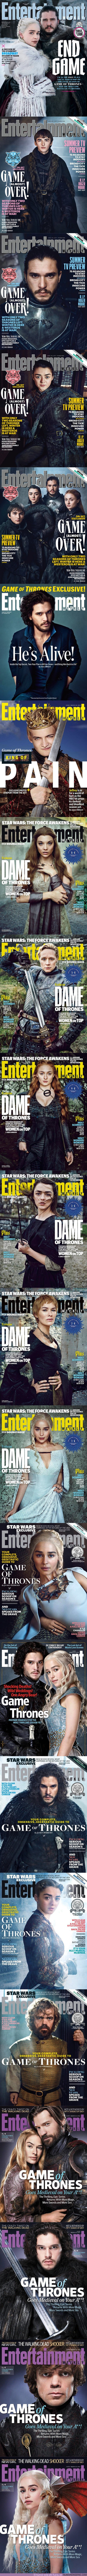 30880 - GALERÍA: Todas las portadas de Juego de Tronos en Entertainment Weekly